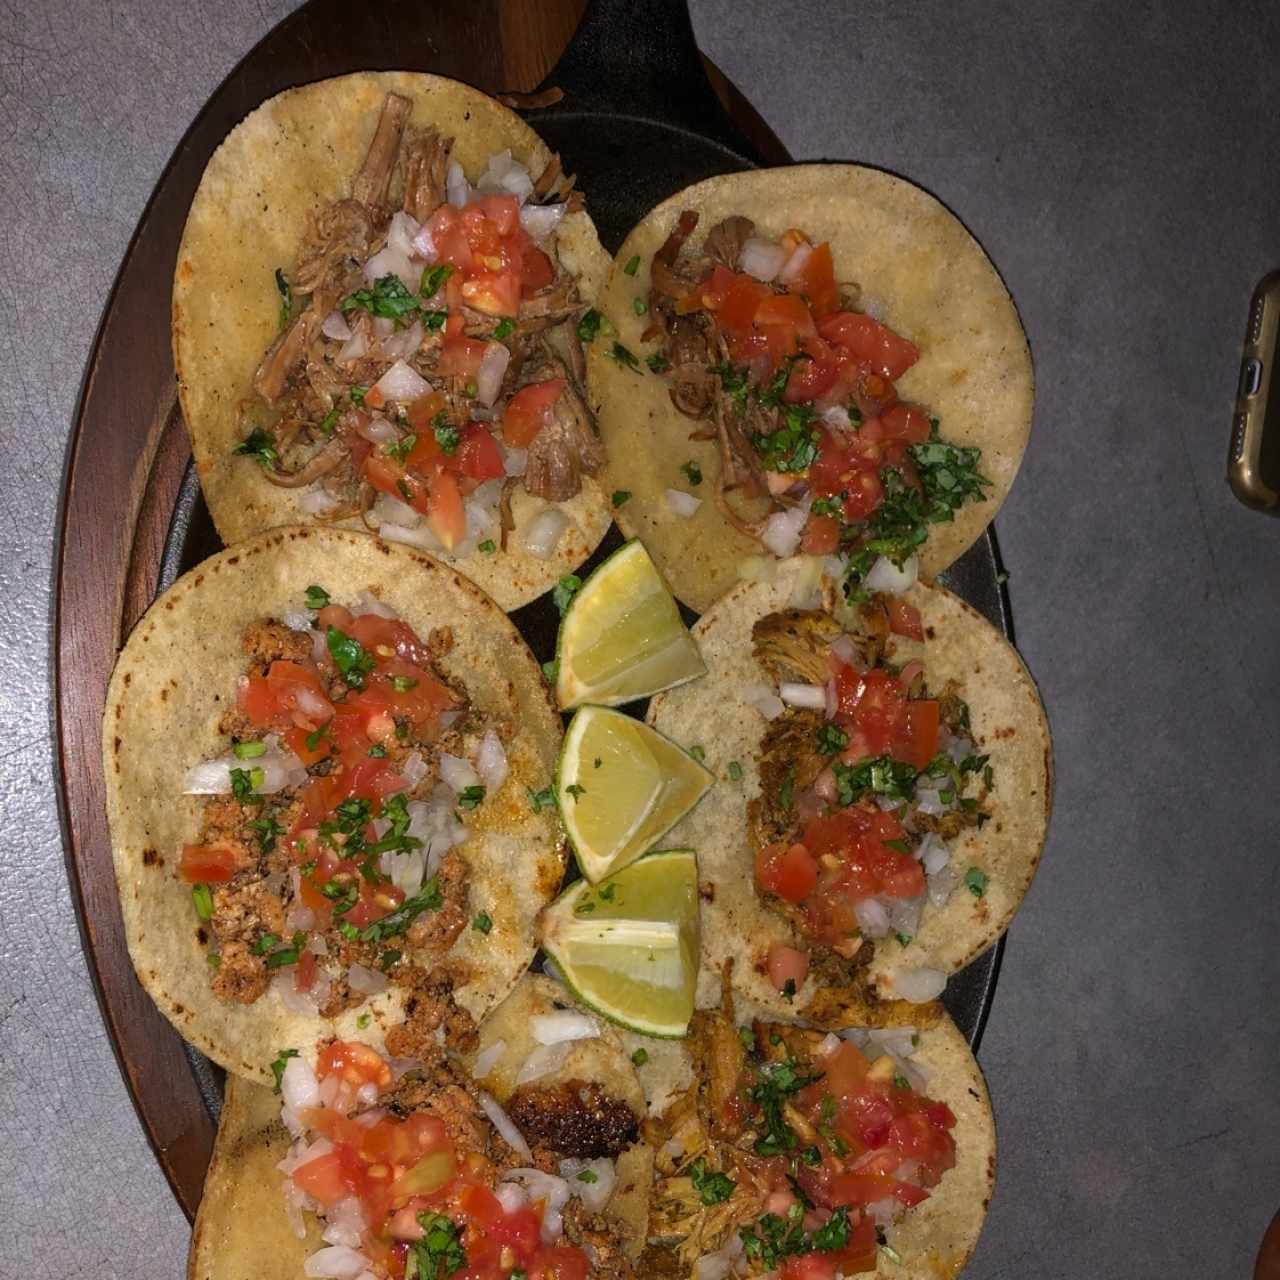 Bandeja de Tacos.